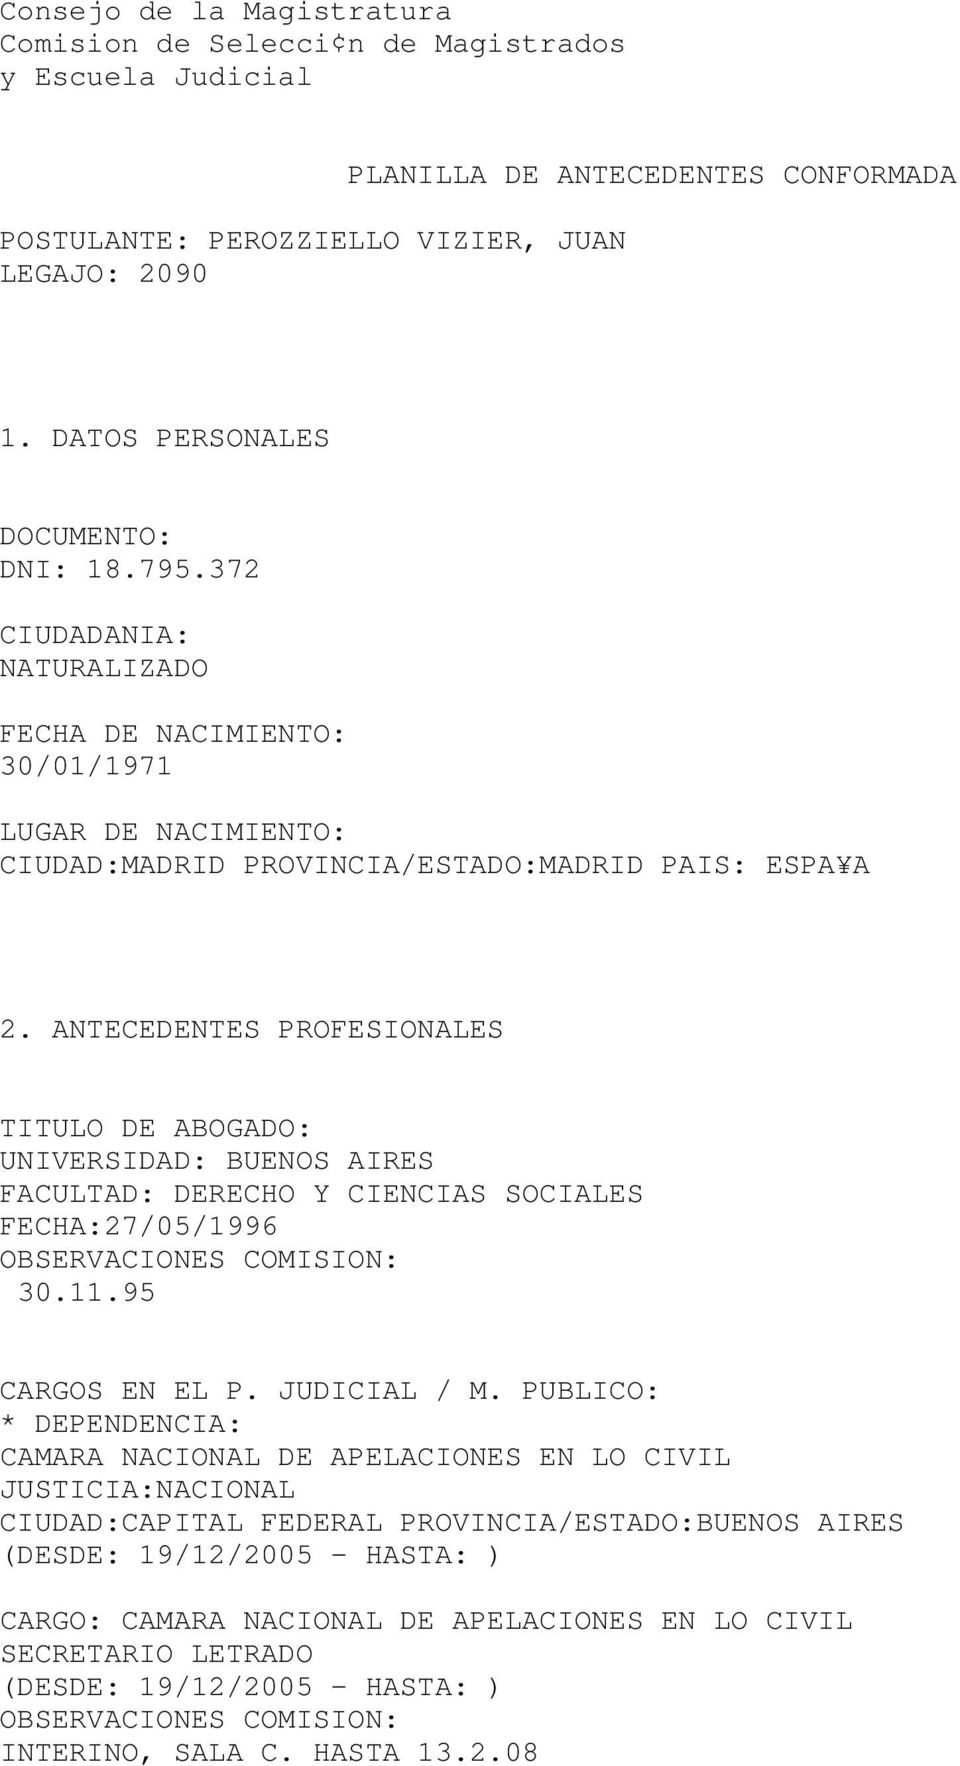 ANTECEDENTES PROFESIONALES TITULO DE ABOGADO: UNIVERSIDAD: BUENOS AIRES FACULTAD: DERECHO Y CIENCIAS SOCIALES FECHA:27/05/1996 30.11.95 CARGOS EN EL P. JUDICIAL / M.